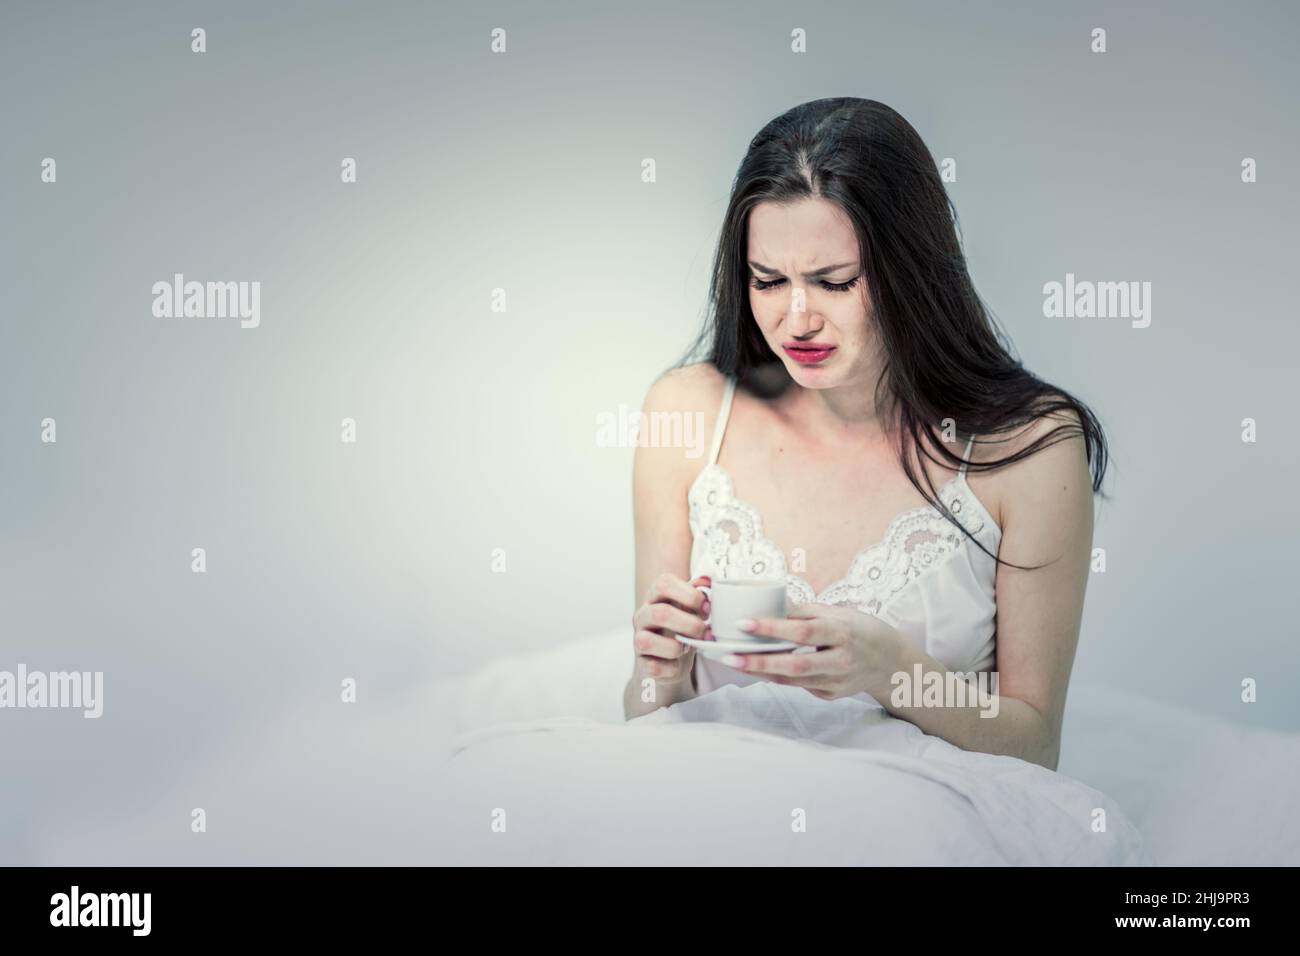 Una donna si siede a letto e beve caffè cattivo. La brunetta contiene una tazza con una bevanda calda. Camera bianca. Buongiorno. Foto Stock